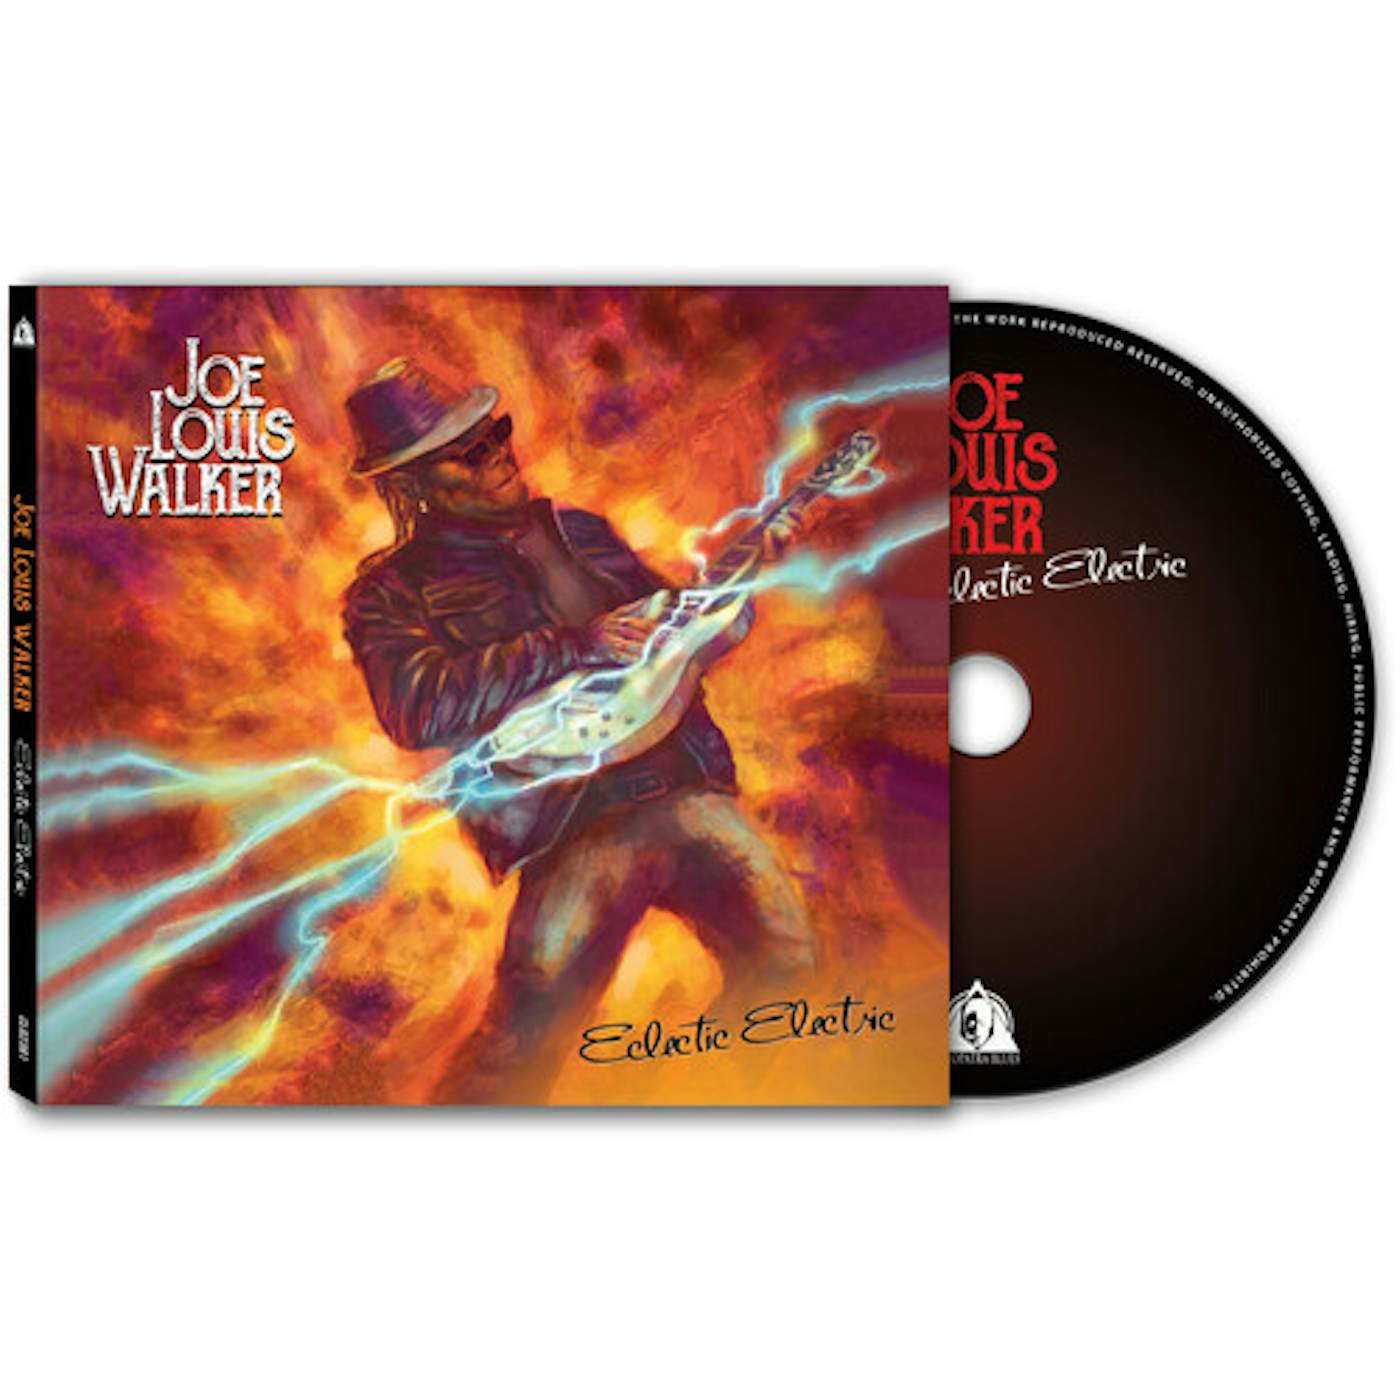 Joe Louis Walker ECLECTIC ELECTRIC CD